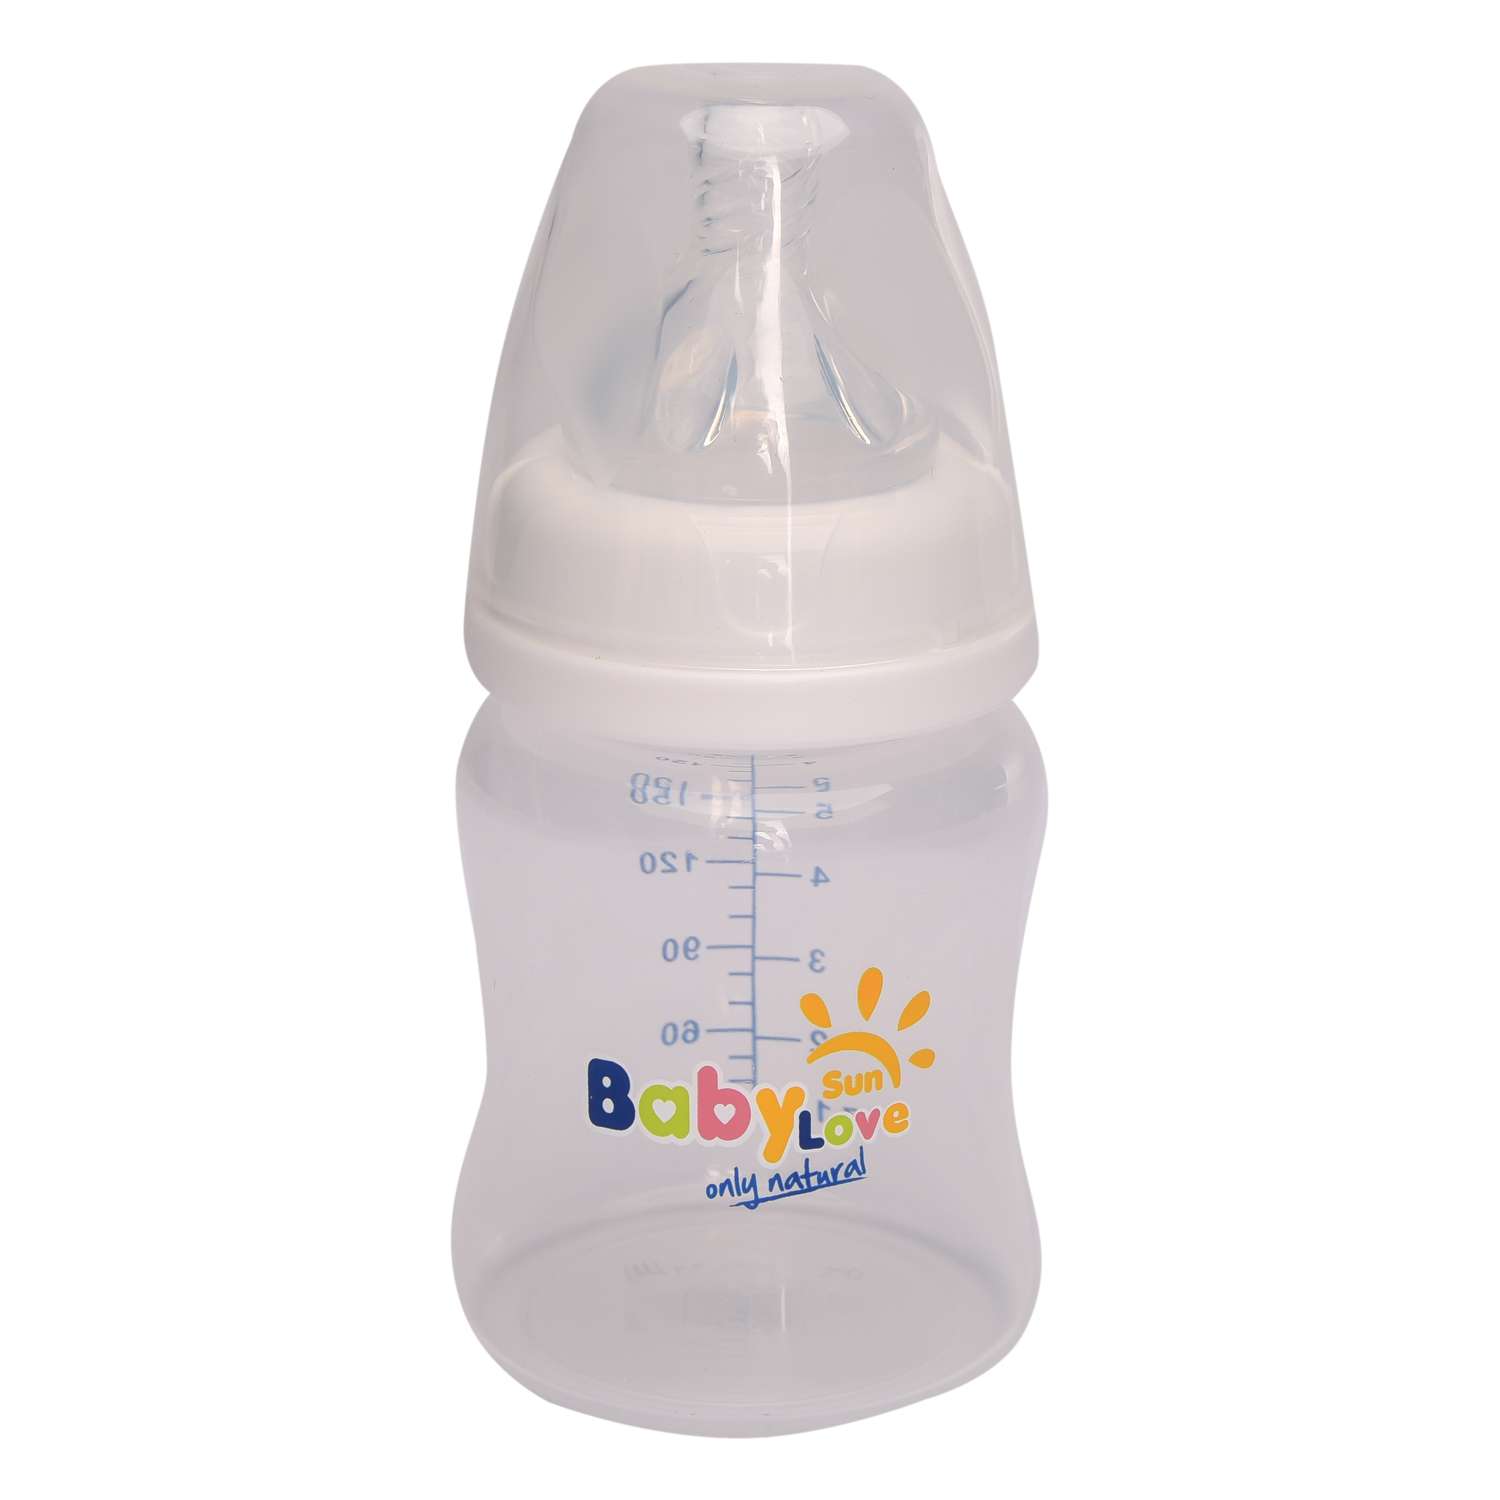 Бутылочка Baby Sun Care 150 мл с силиконовой соской медленный поток - фото 1